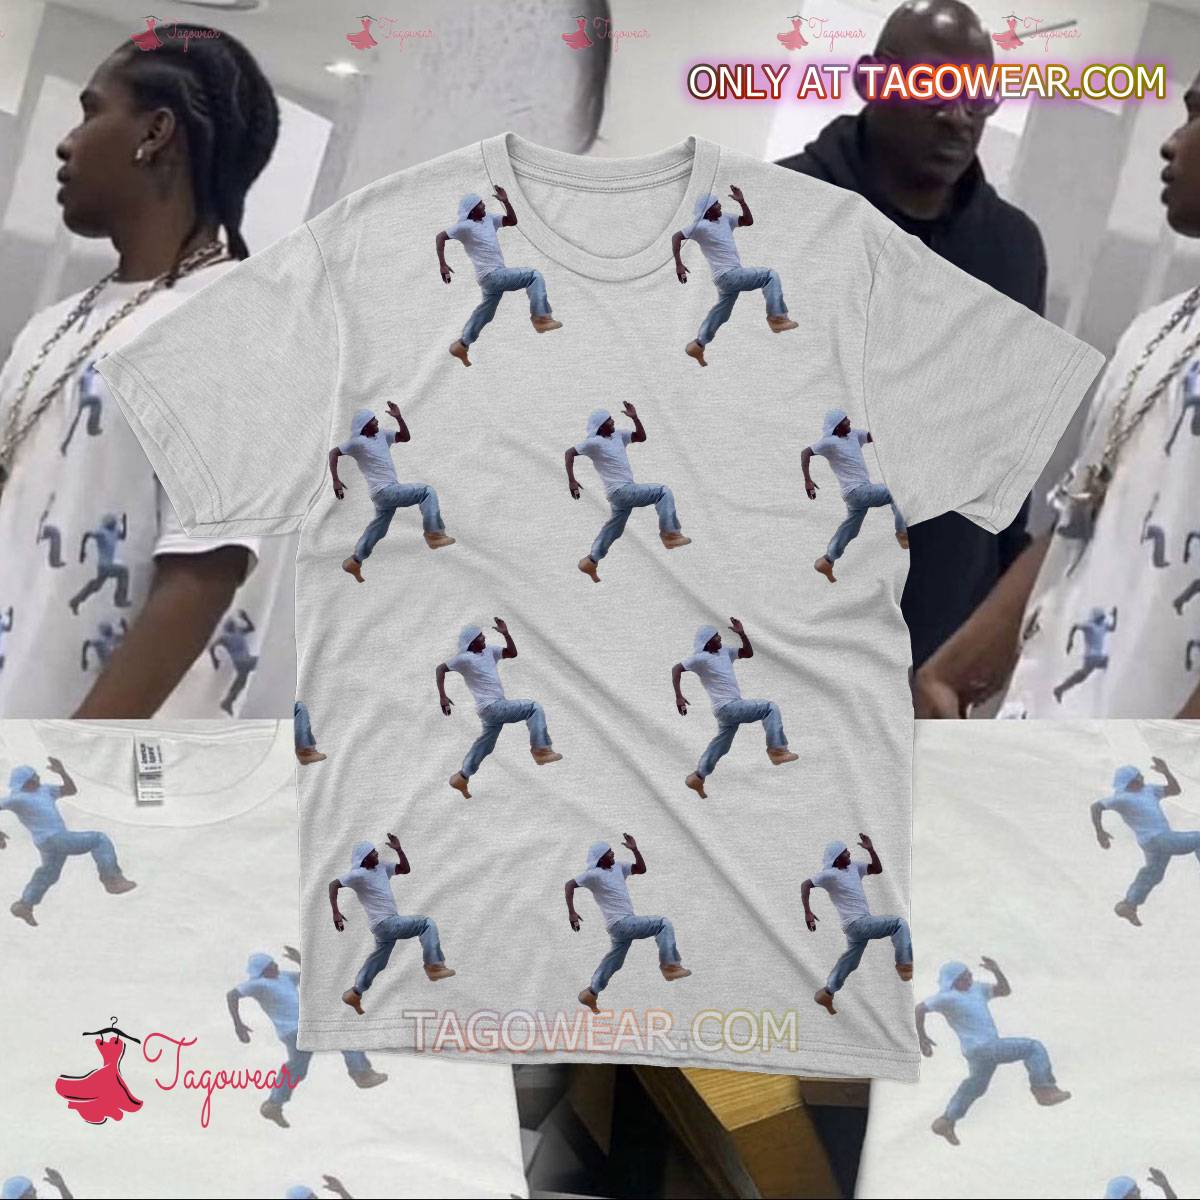 A$ap Rocky Wearing A Shirt Of Himself Running Shirt a